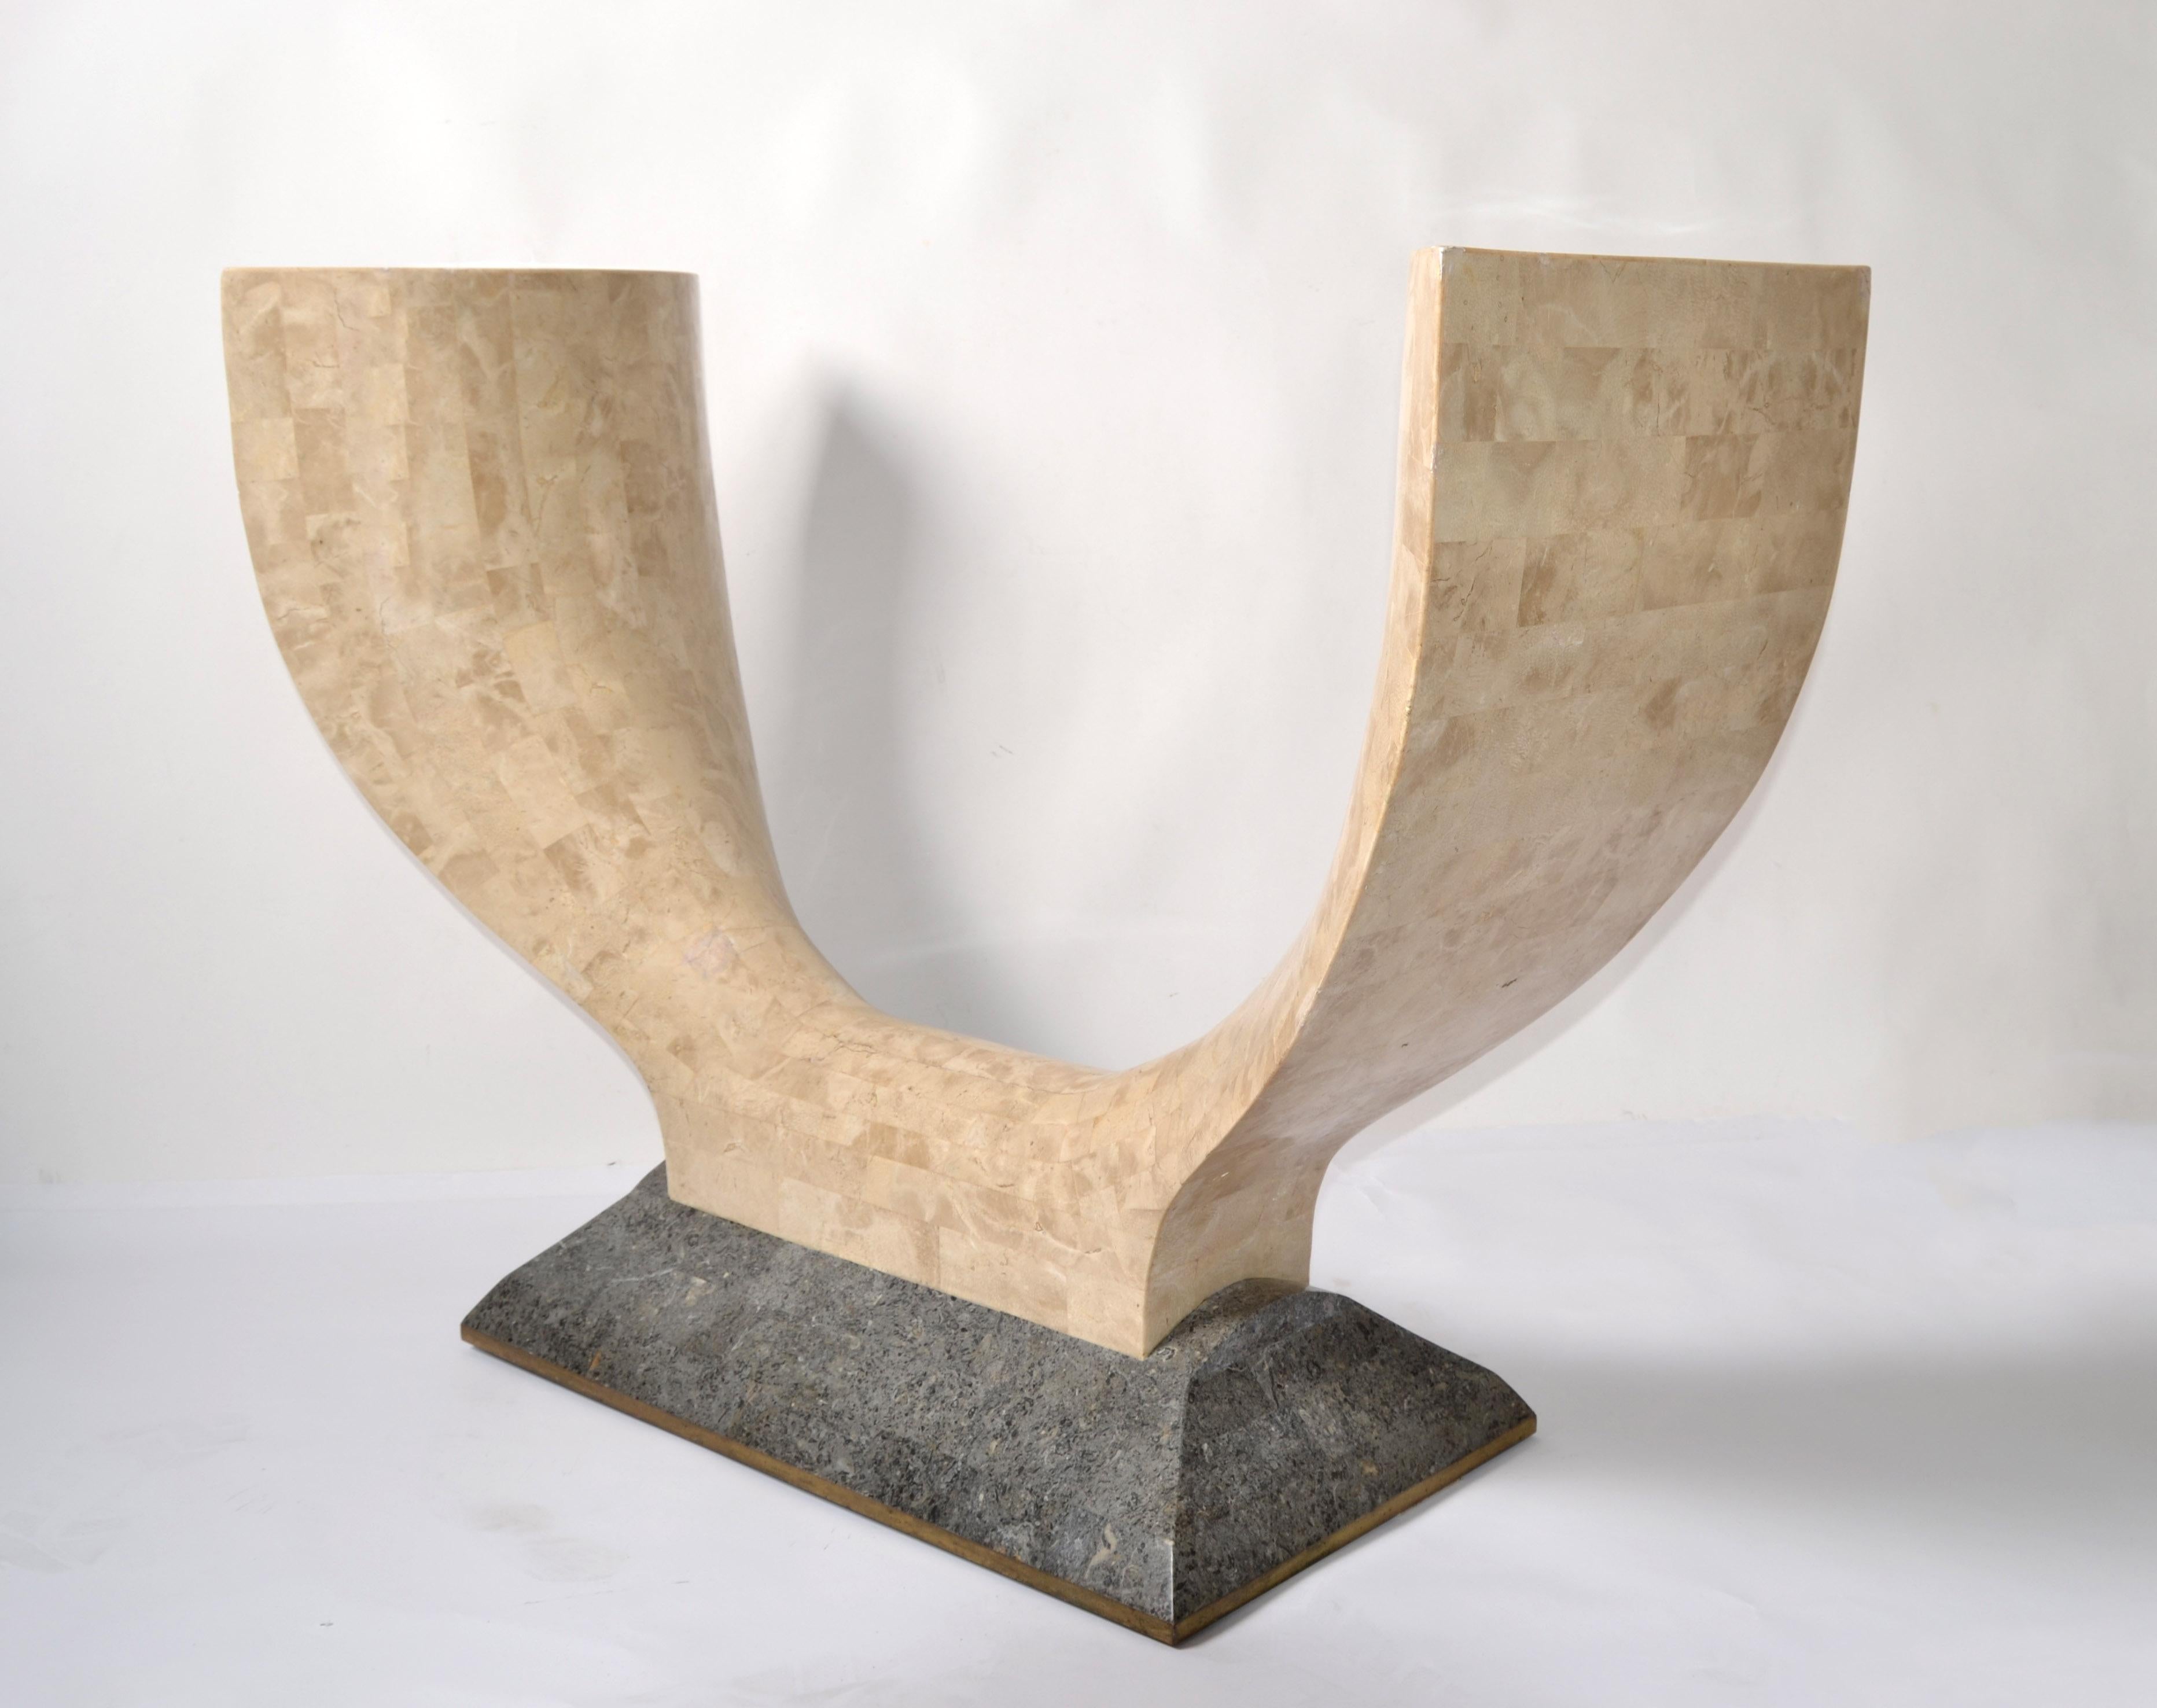 Table console en forme de Wishbone de style Art Déco réalisée vers 1980 par Maitland Smith aux Philippines.
Le cœur est un demi-cercle en pierre beige tessellée sur bois, monté sur une base en marbre gris avec une bordure en feuille d'or.
La table